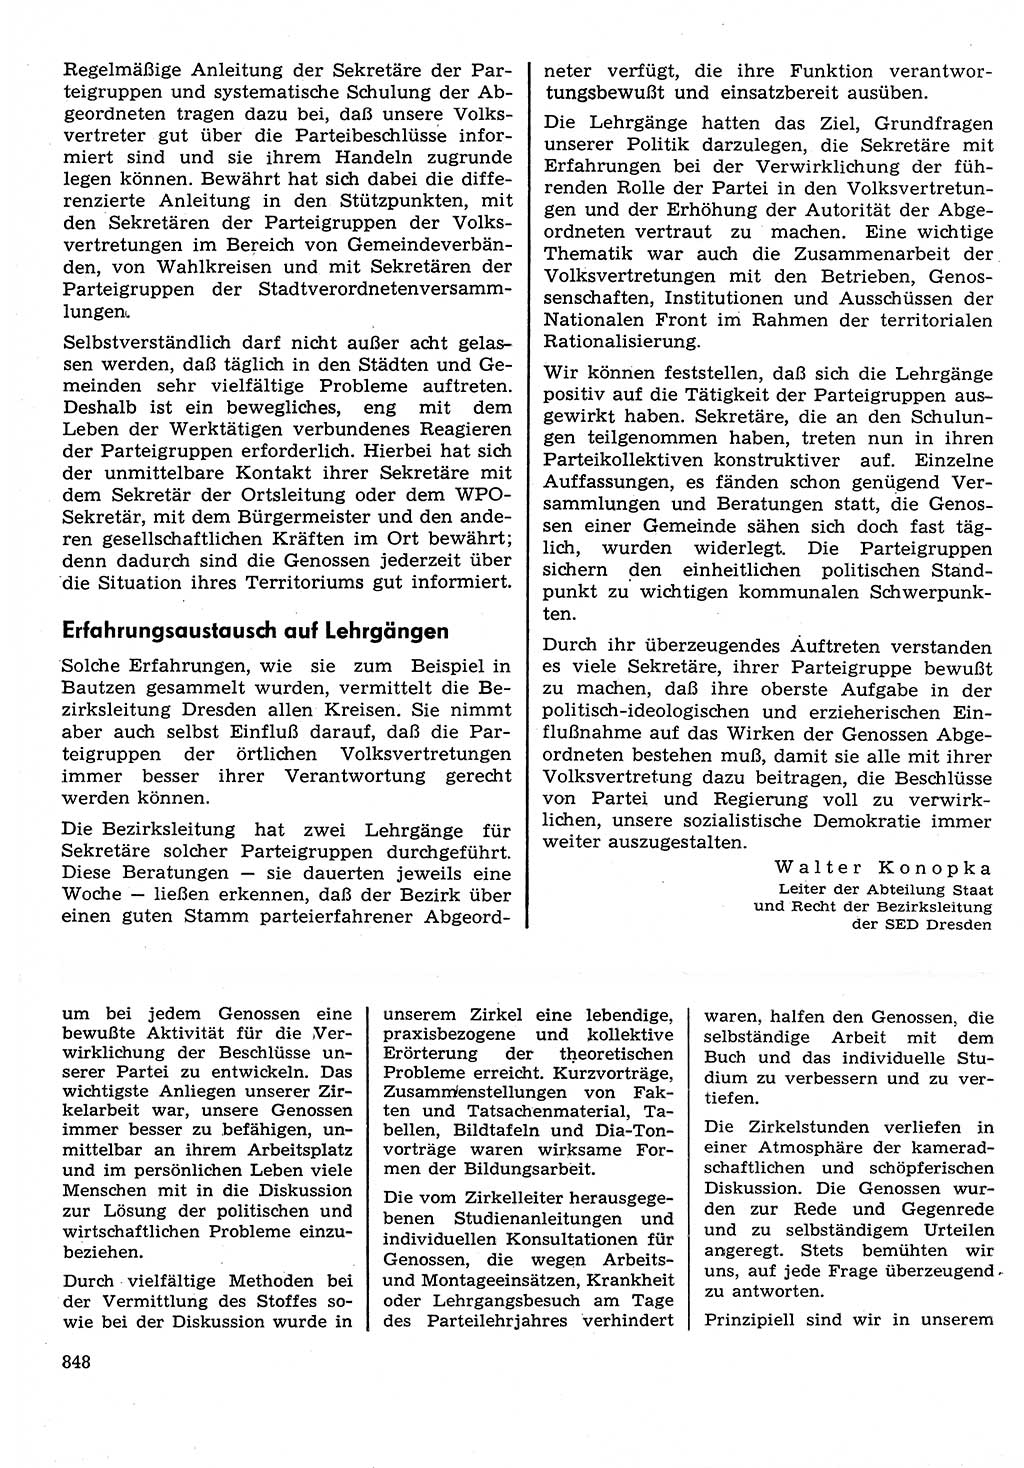 Neuer Weg (NW), Organ des Zentralkomitees (ZK) der SED (Sozialistische Einheitspartei Deutschlands) für Fragen des Parteilebens, 30. Jahrgang [Deutsche Demokratische Republik (DDR)] 1975, Seite 848 (NW ZK SED DDR 1975, S. 848)